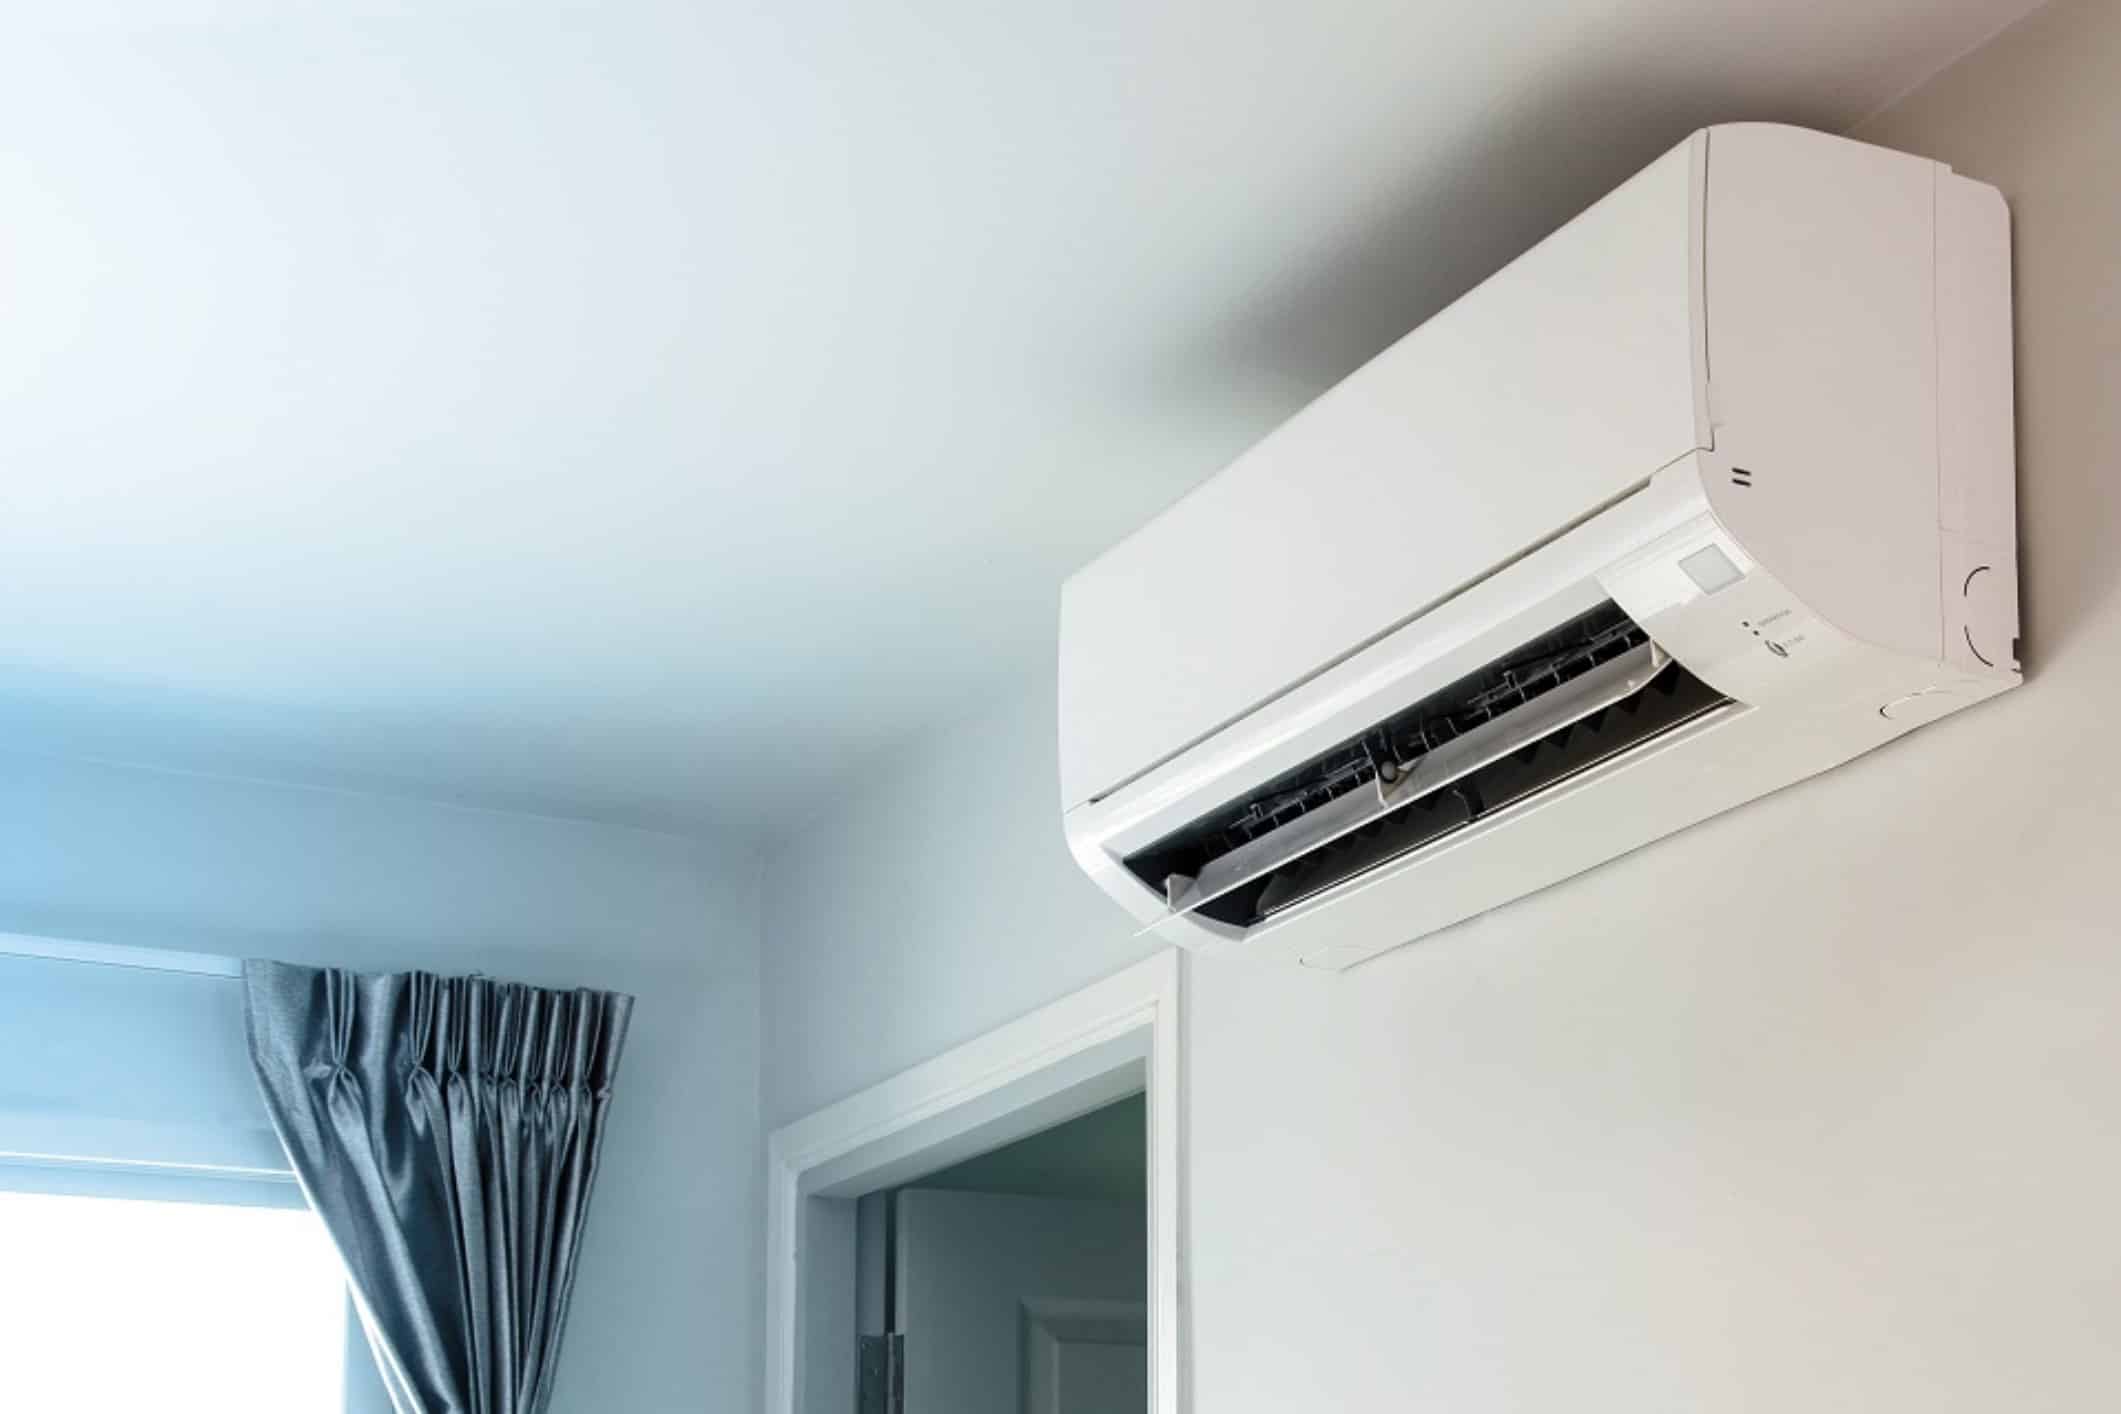 Benefícios do ar condicionado moderno